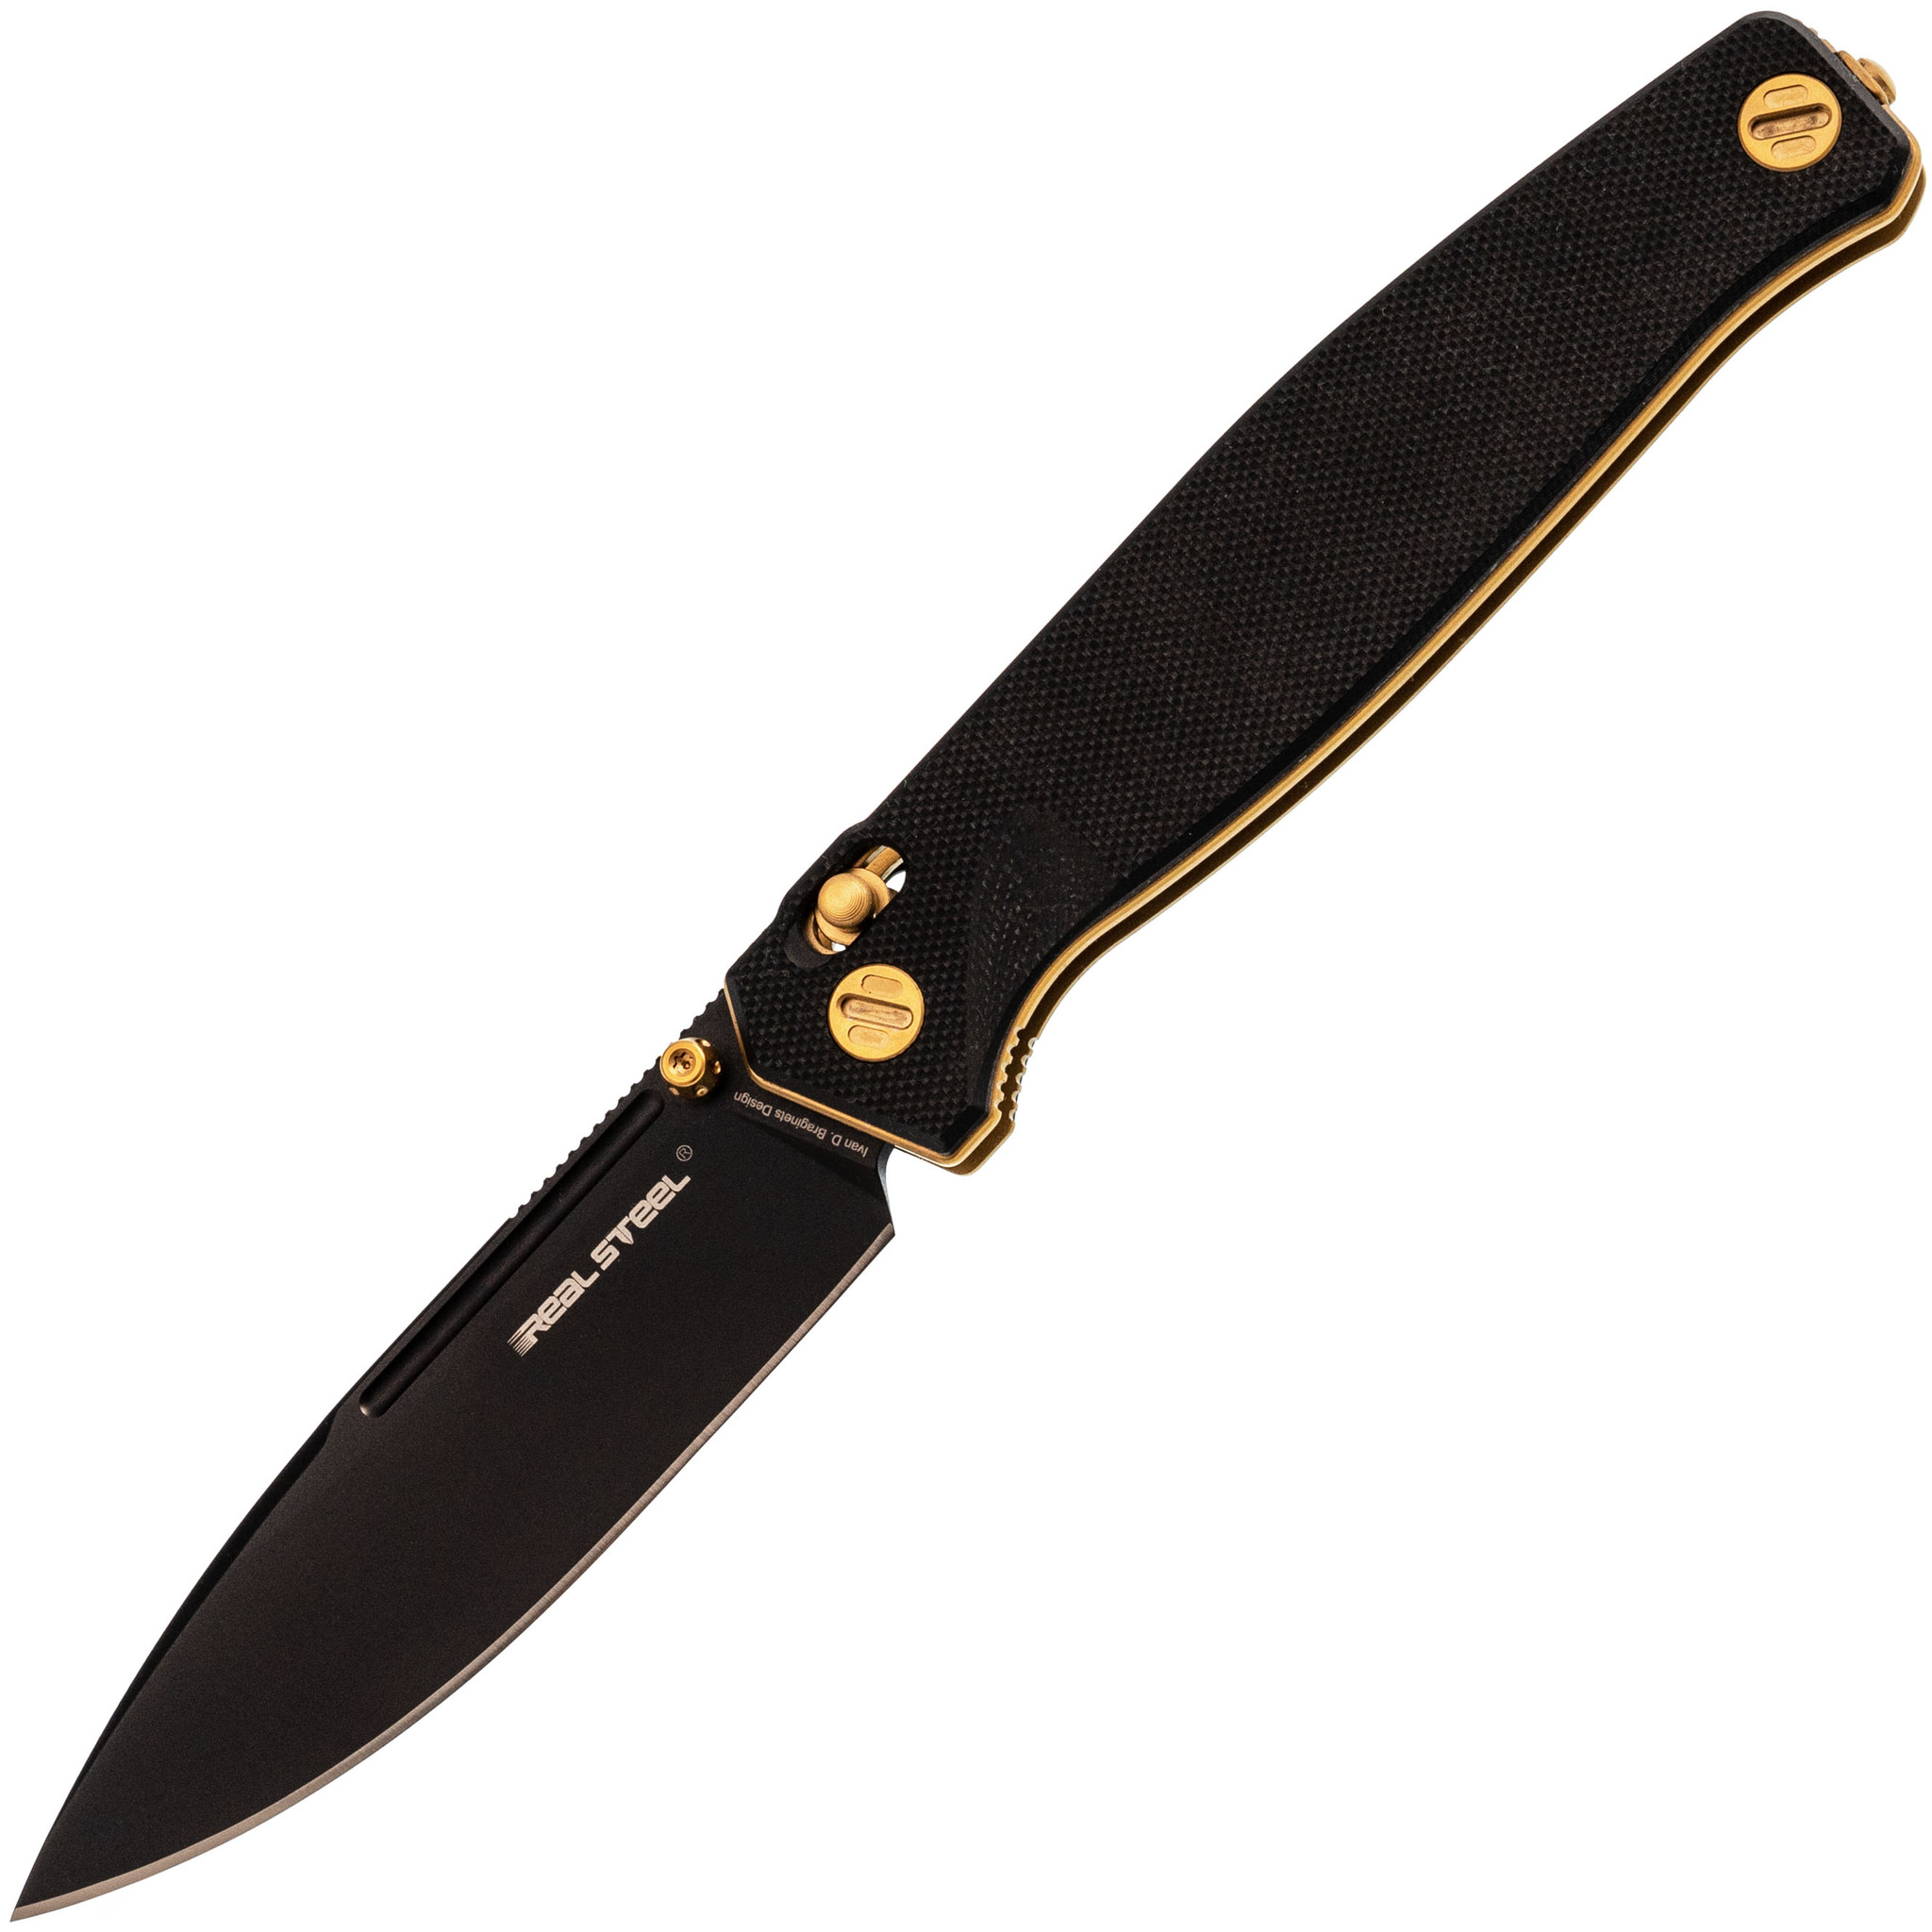 Складной нож Realsteel 7652BG Huginn black, сталь VG-10, рукоять G10